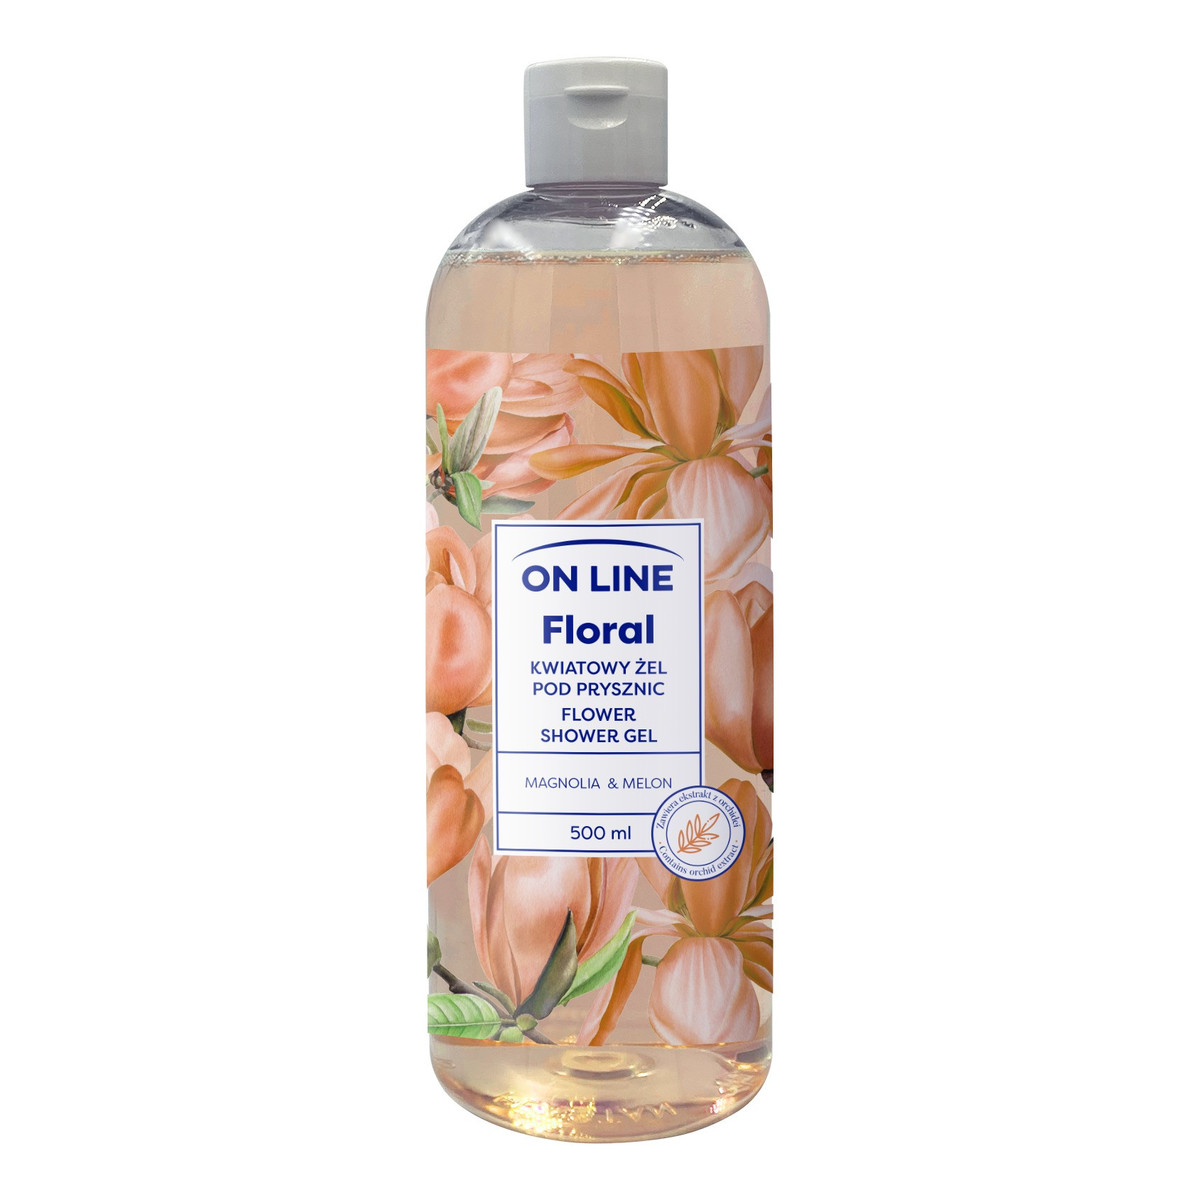 On Line Floral Kwiatowy żel pod prysznic - Magnolia & Melon 500ml